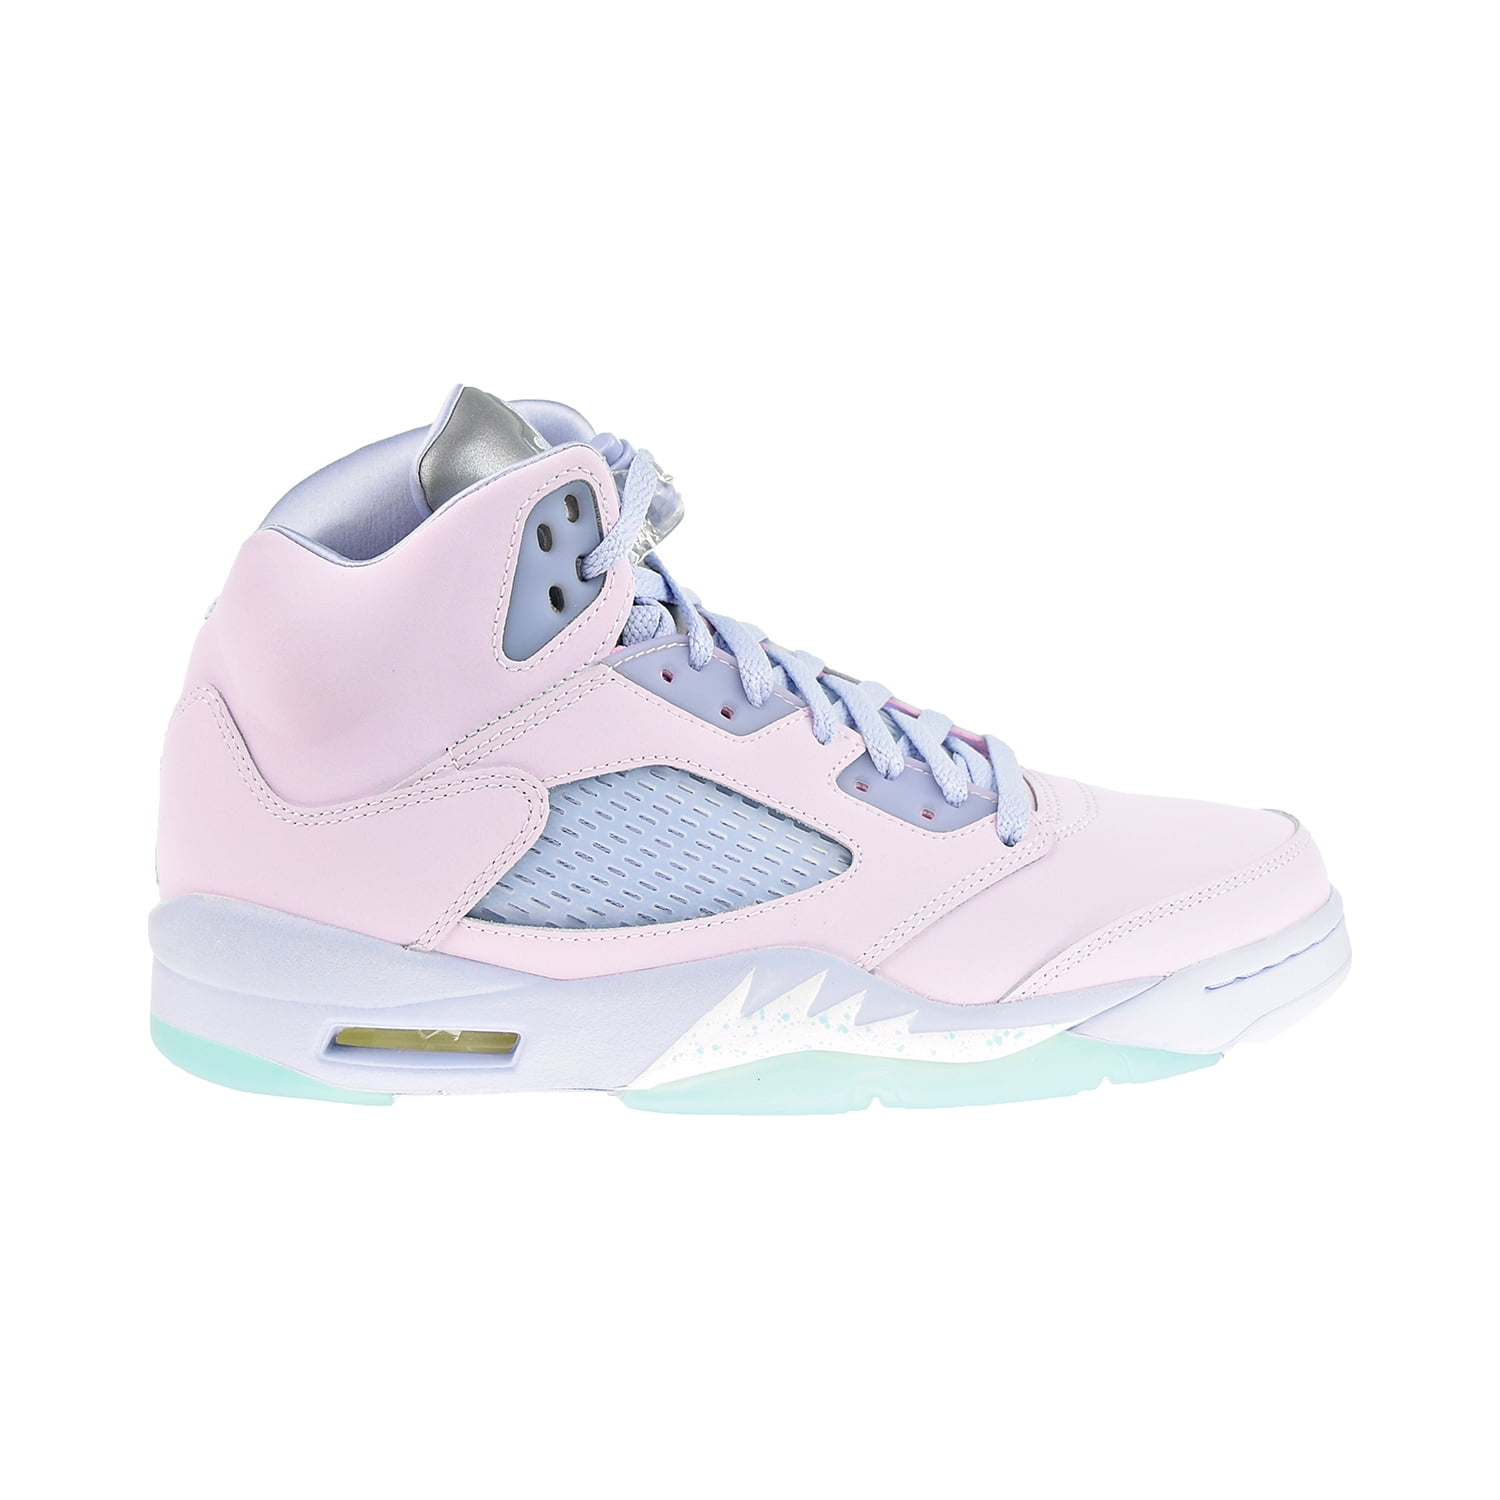 Air Jordan 5 Retro Easter Men's Shoes Regal Pink-Ghost-Copa dv0562-600 ...